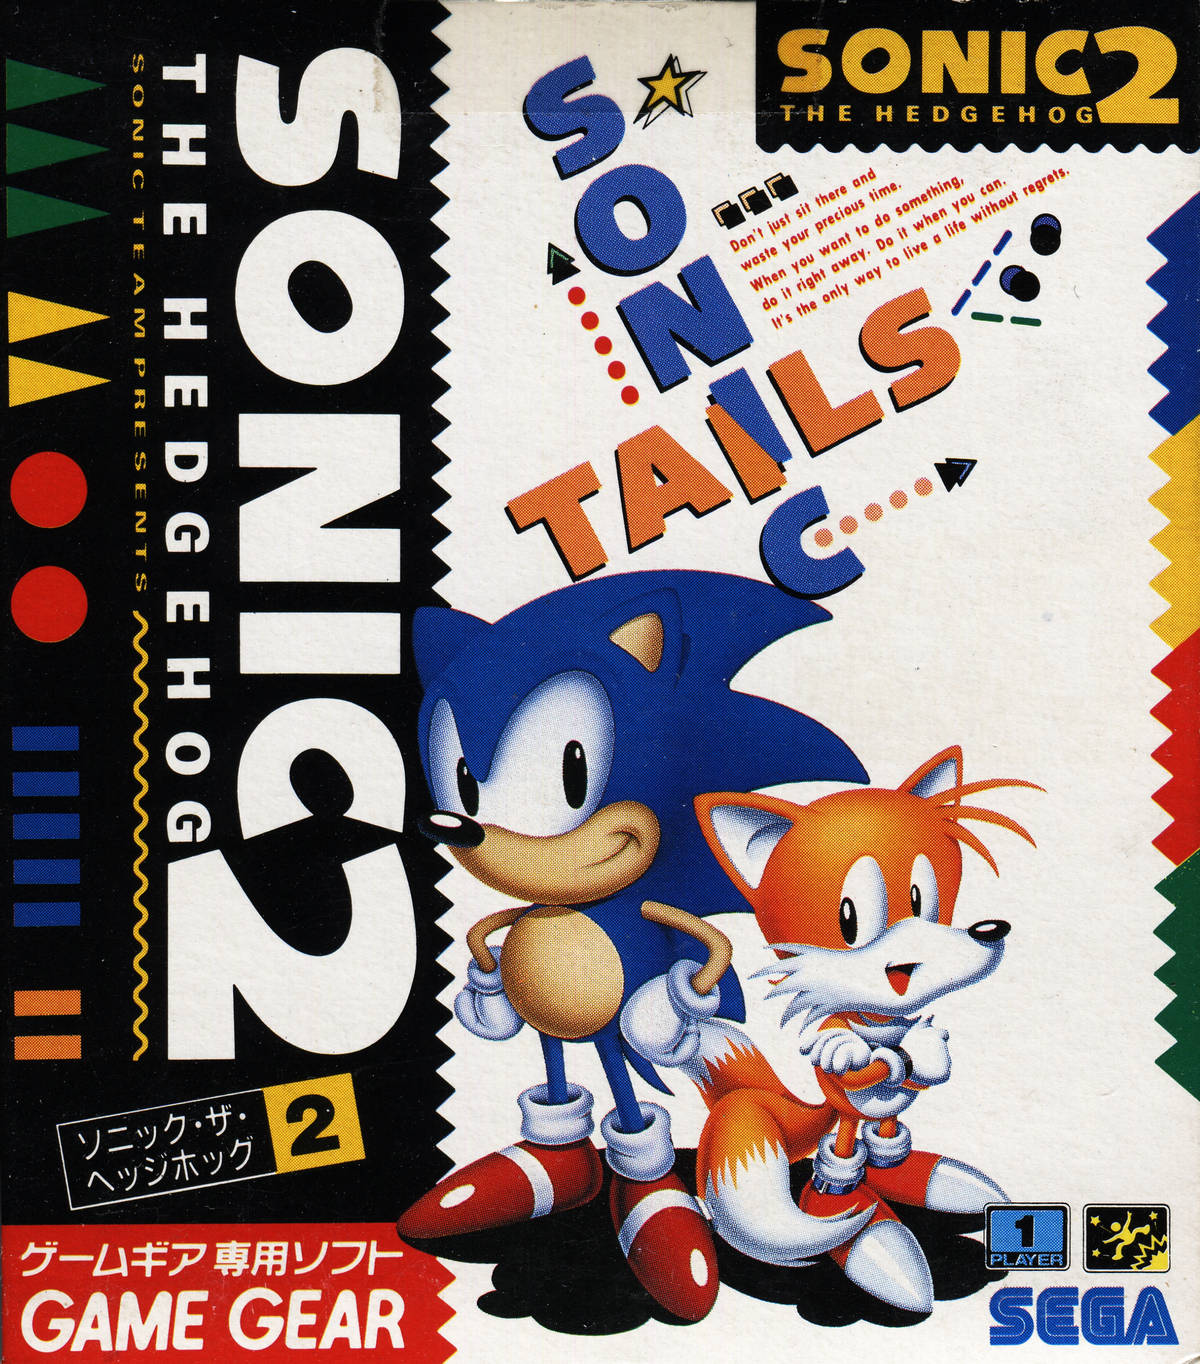 Capa do jogo Sonic the Hedgehog 2